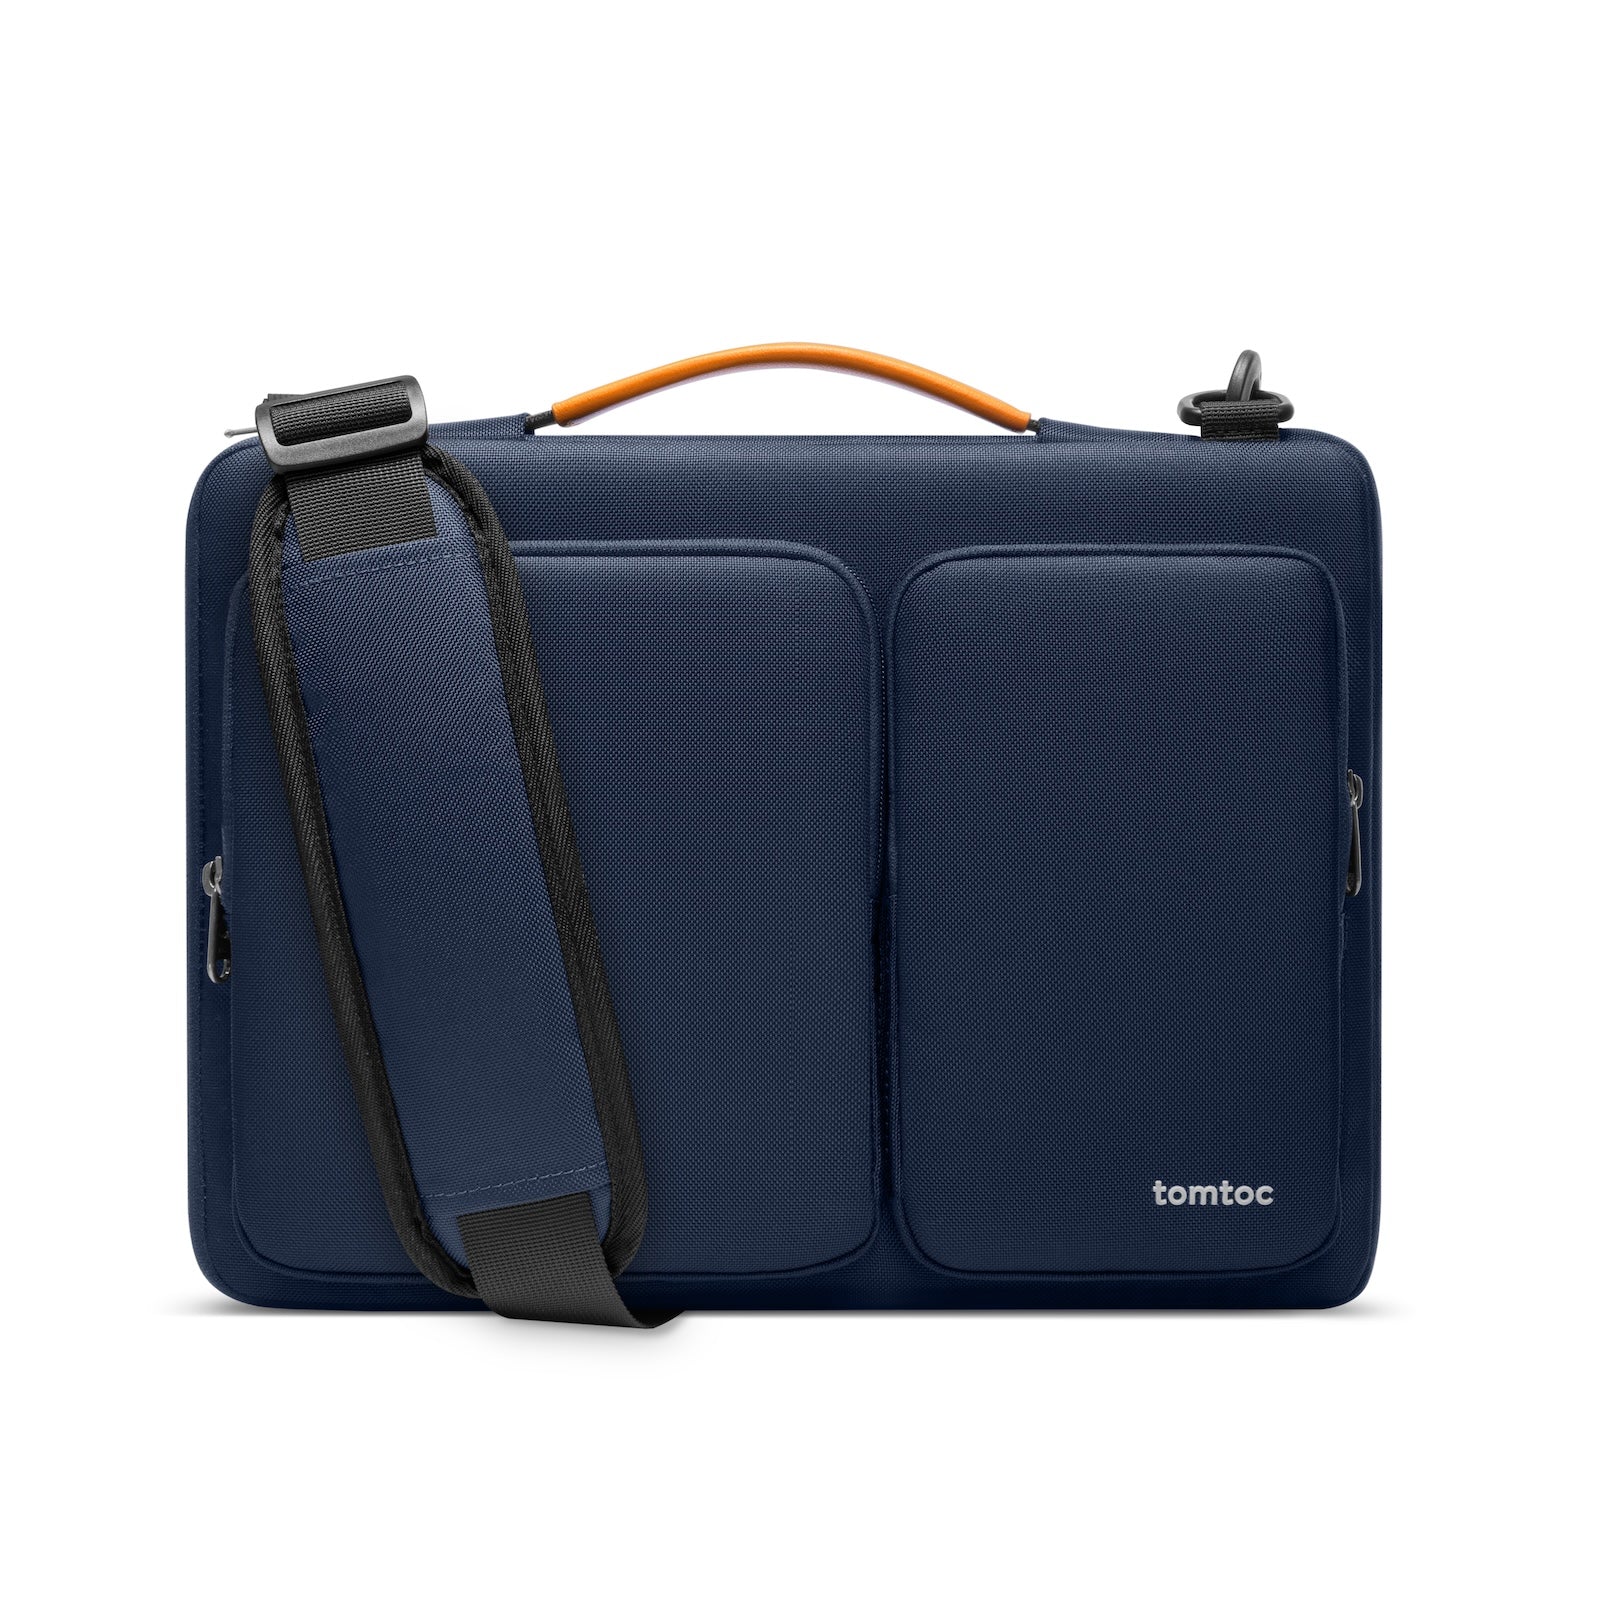 tomtoc Defender-A42 Laptop Shoulder Bag - 14inch